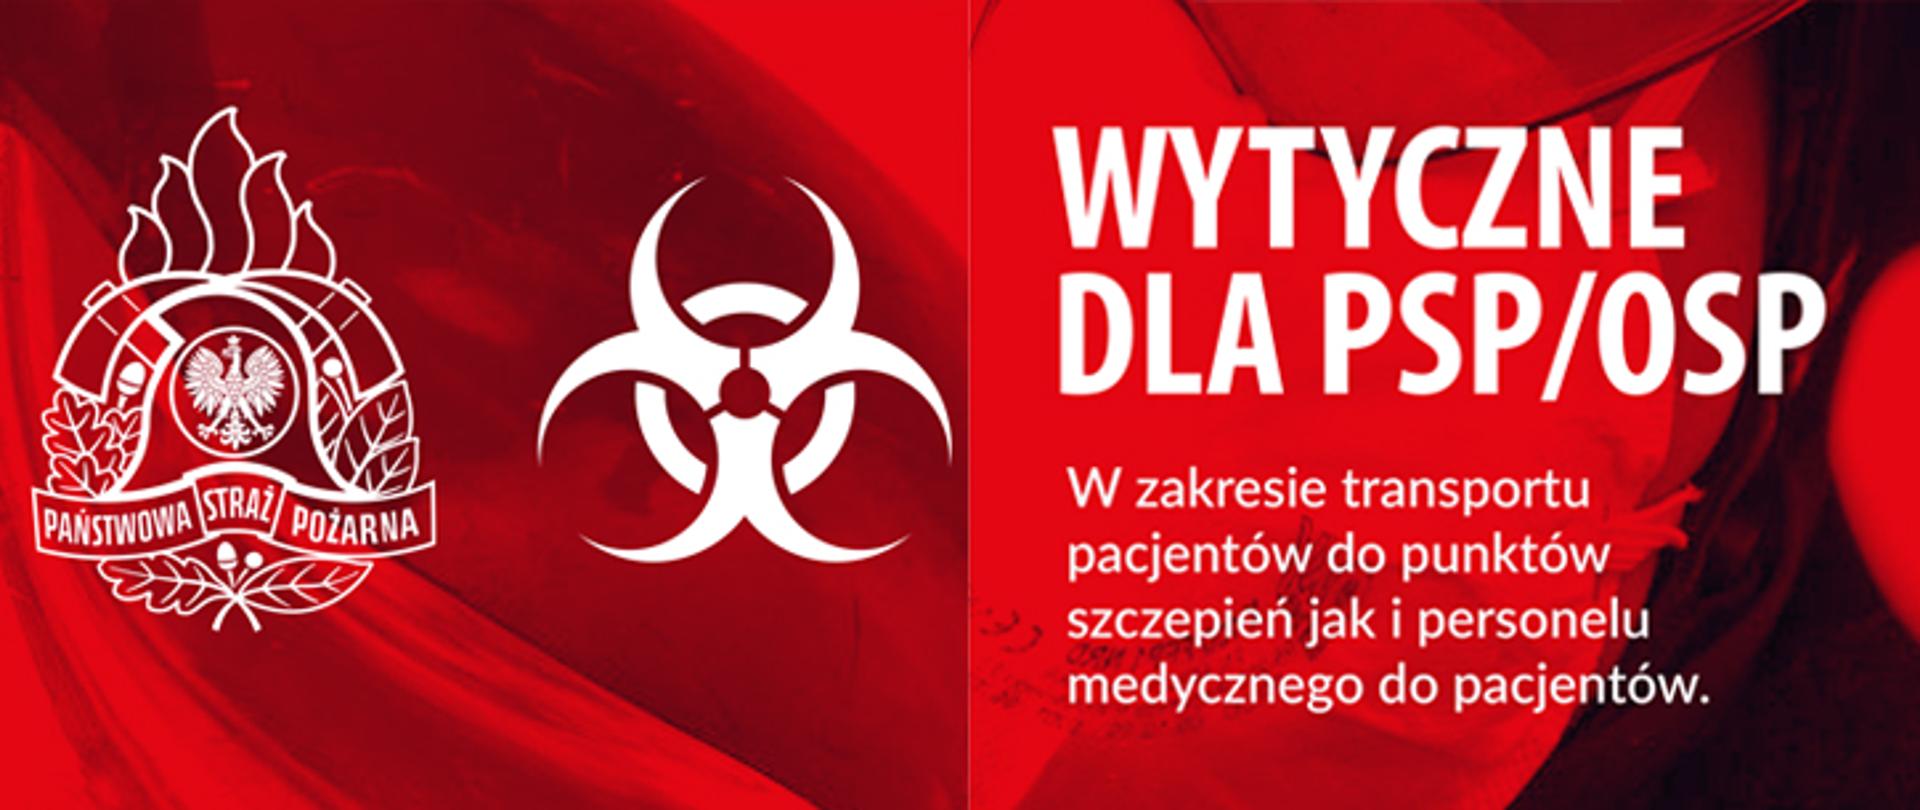 Na czerwonym tle umieszczony logotyp PSP oraz symbol zagrożenia biologicznego w kolorze białym wraz z napisem wytyczne dla PSP i OSP w zakresie transportu pacjentów do punktów szczepień jak i personelu medycznego do pacjentów.